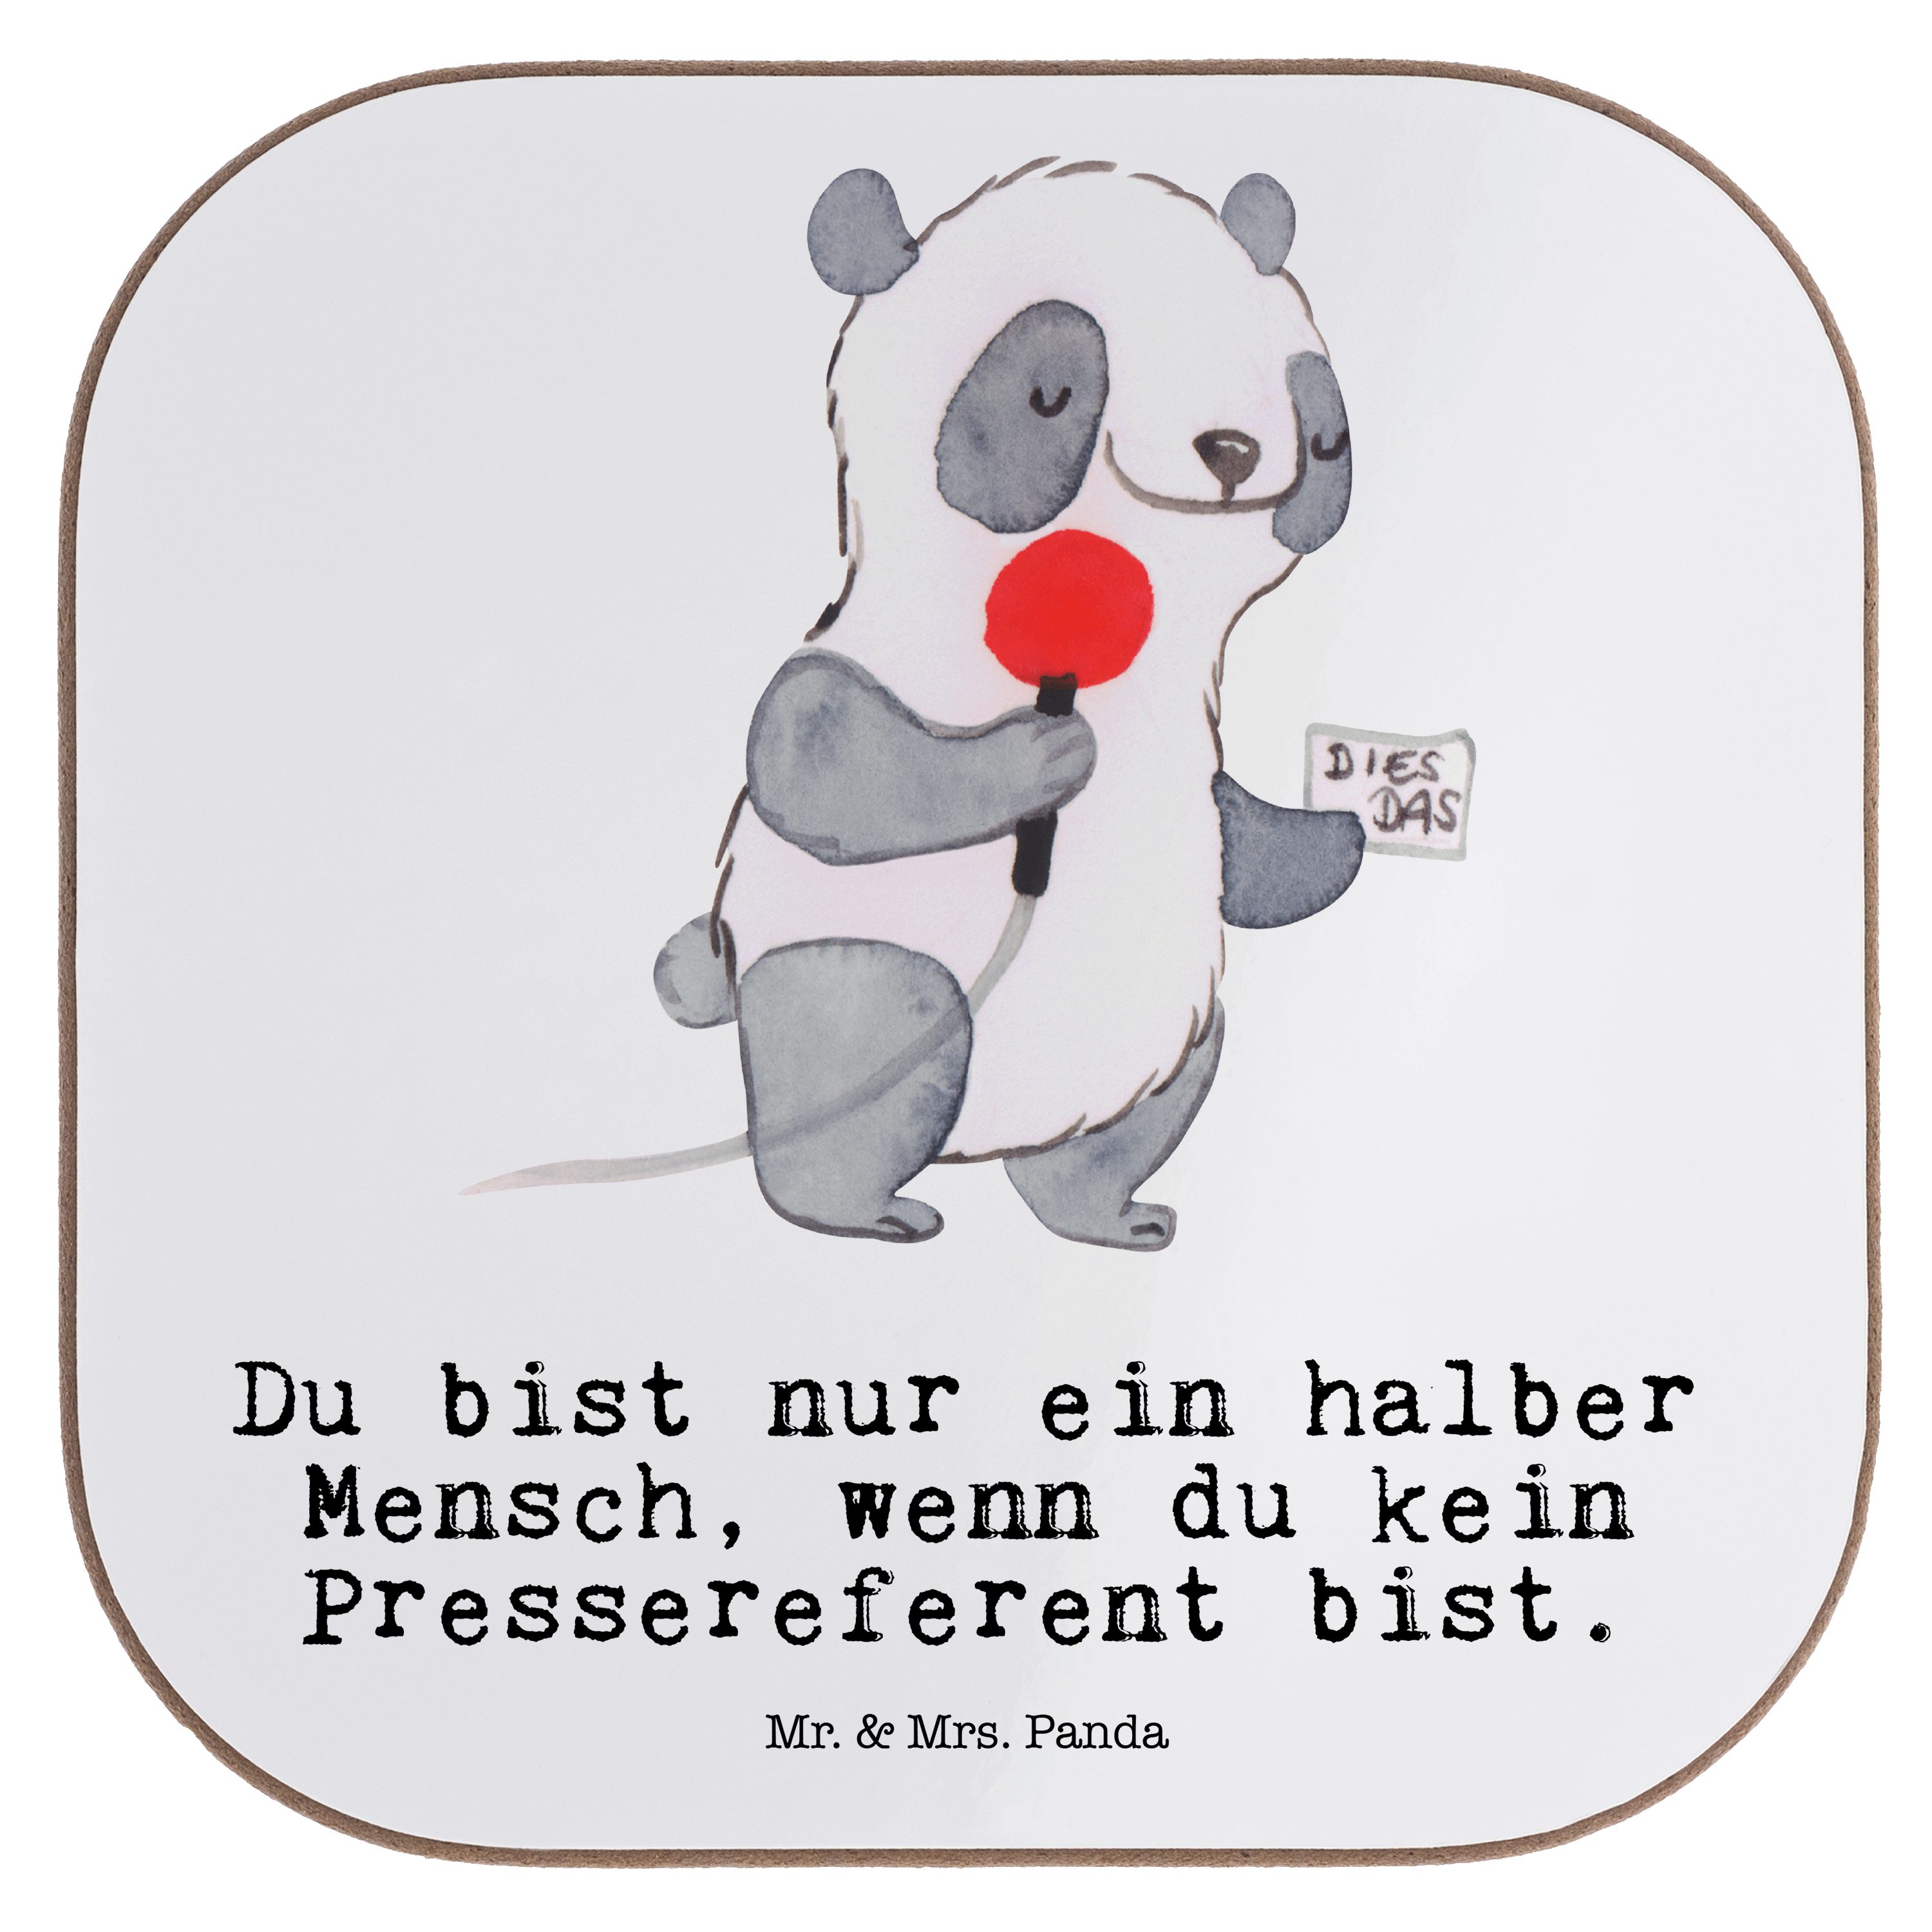 Mr. & Mrs. Panda Getränkeuntersetzer Pressereferent mit Herz - Weiß - Geschenk, Studium, Untersetzer Gläse, 1-tlg. | Getränkeuntersetzer